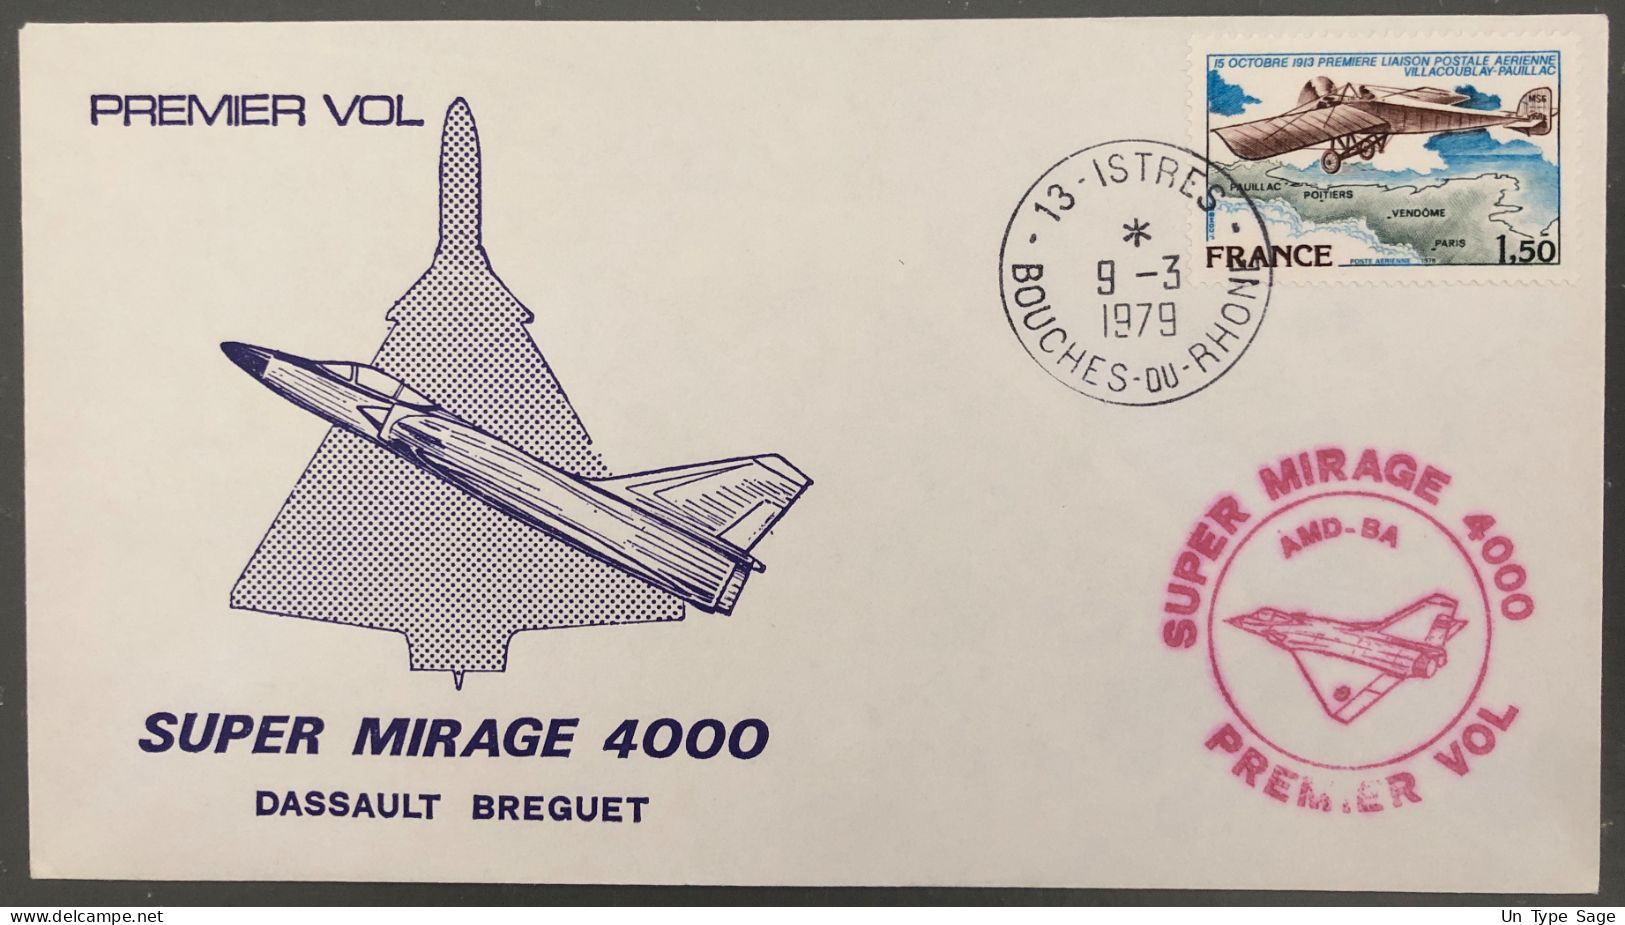 France, Premier Vol, SUPER MIRAGE 4000 - Enveloppe 9.3.1979 - (B1401) - Primi Voli